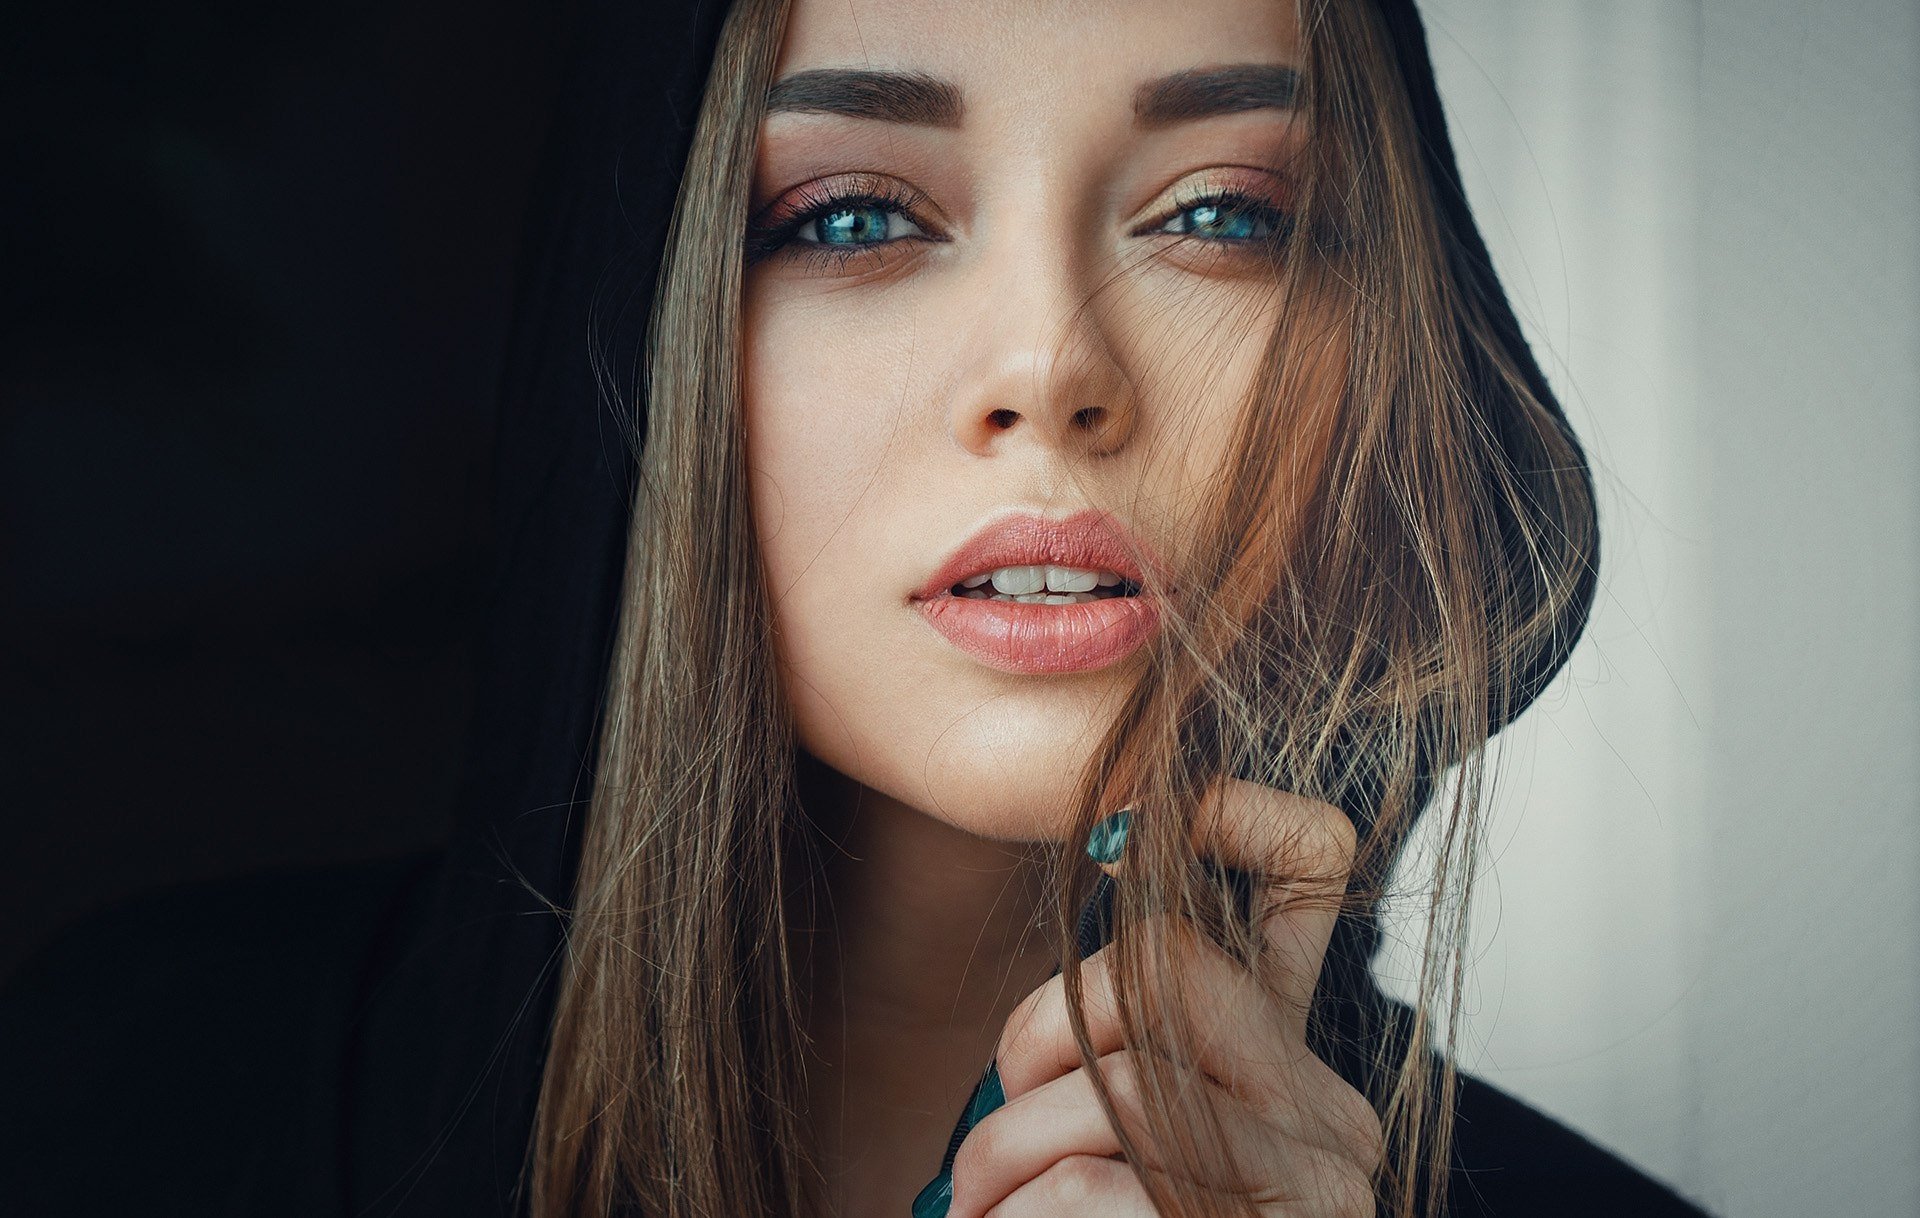 Download Blue Eyes Brunette Model Woman Face Hd Wallpaper By Evgeny Freyer 0133